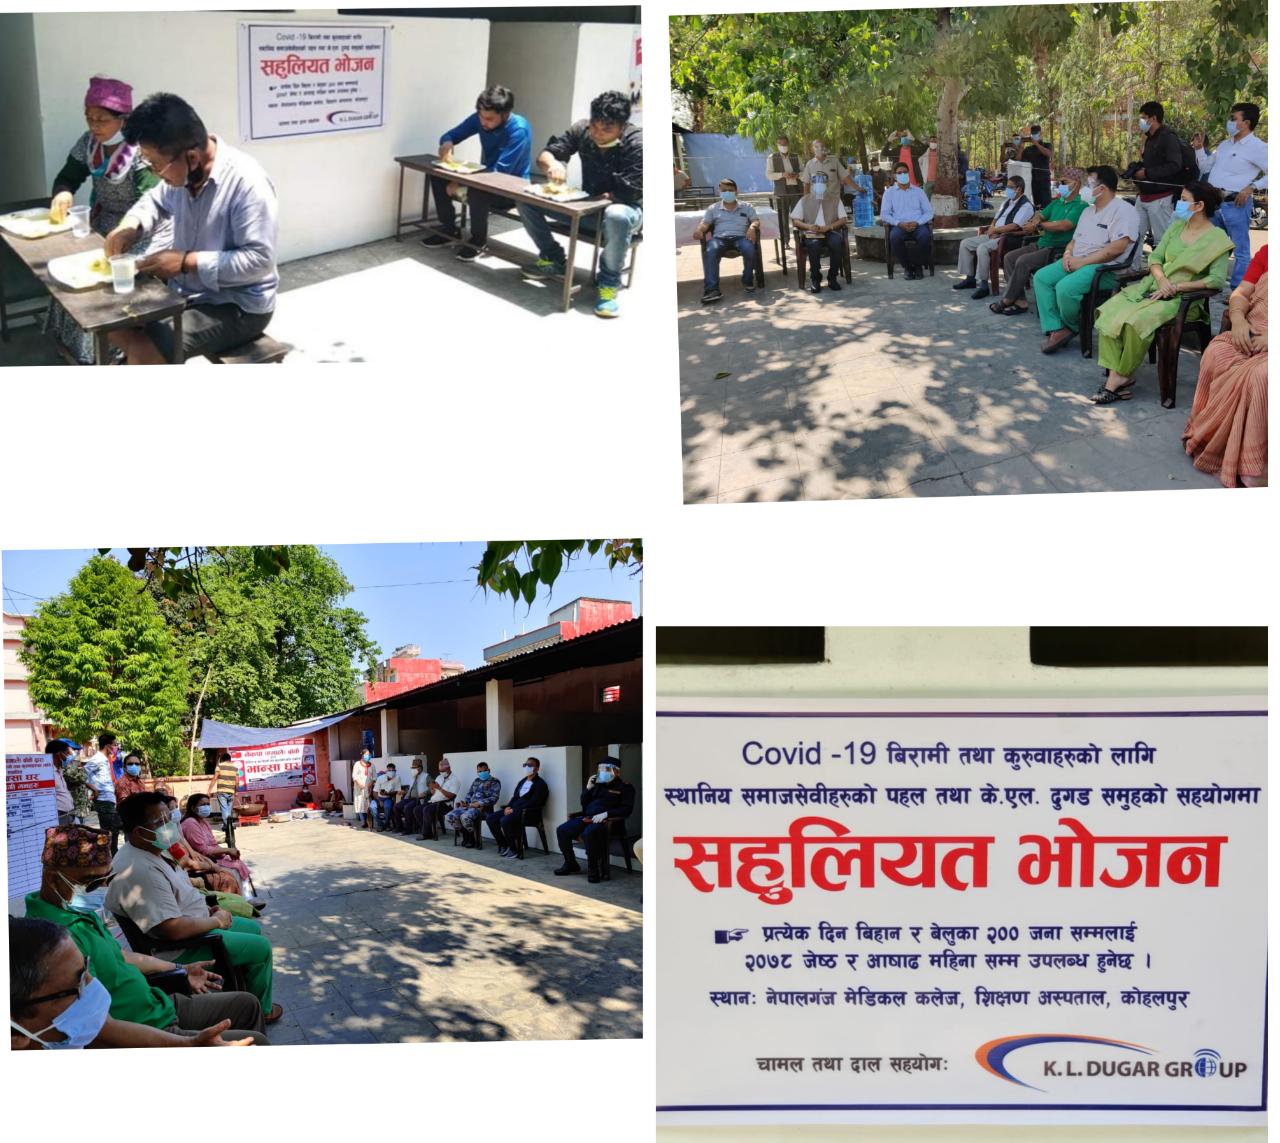 मेडिकल कलेज कोहलपुरमा दैनिक ४०० जनालाई खाना खुवाउँदै केएल दुगड समूह